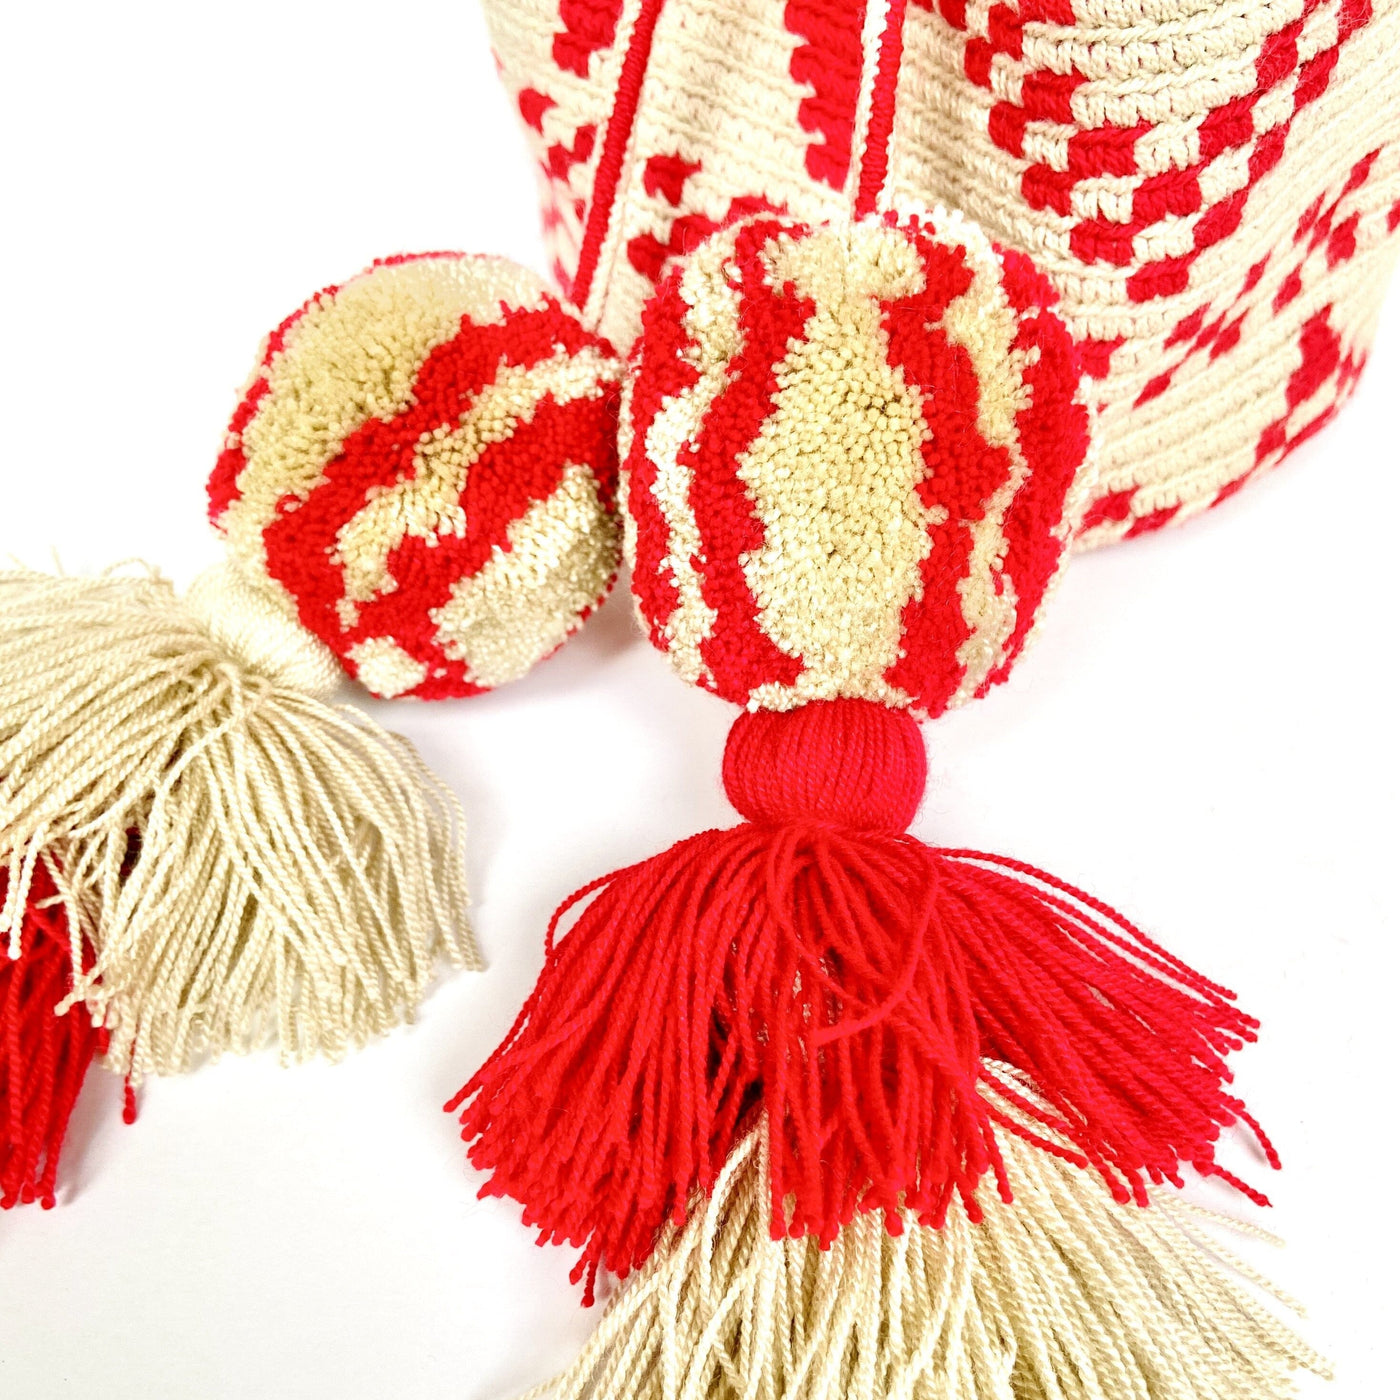 Colorful4U SCARLET RED Medium Crochet Bag | Pompoms/Tassels detail